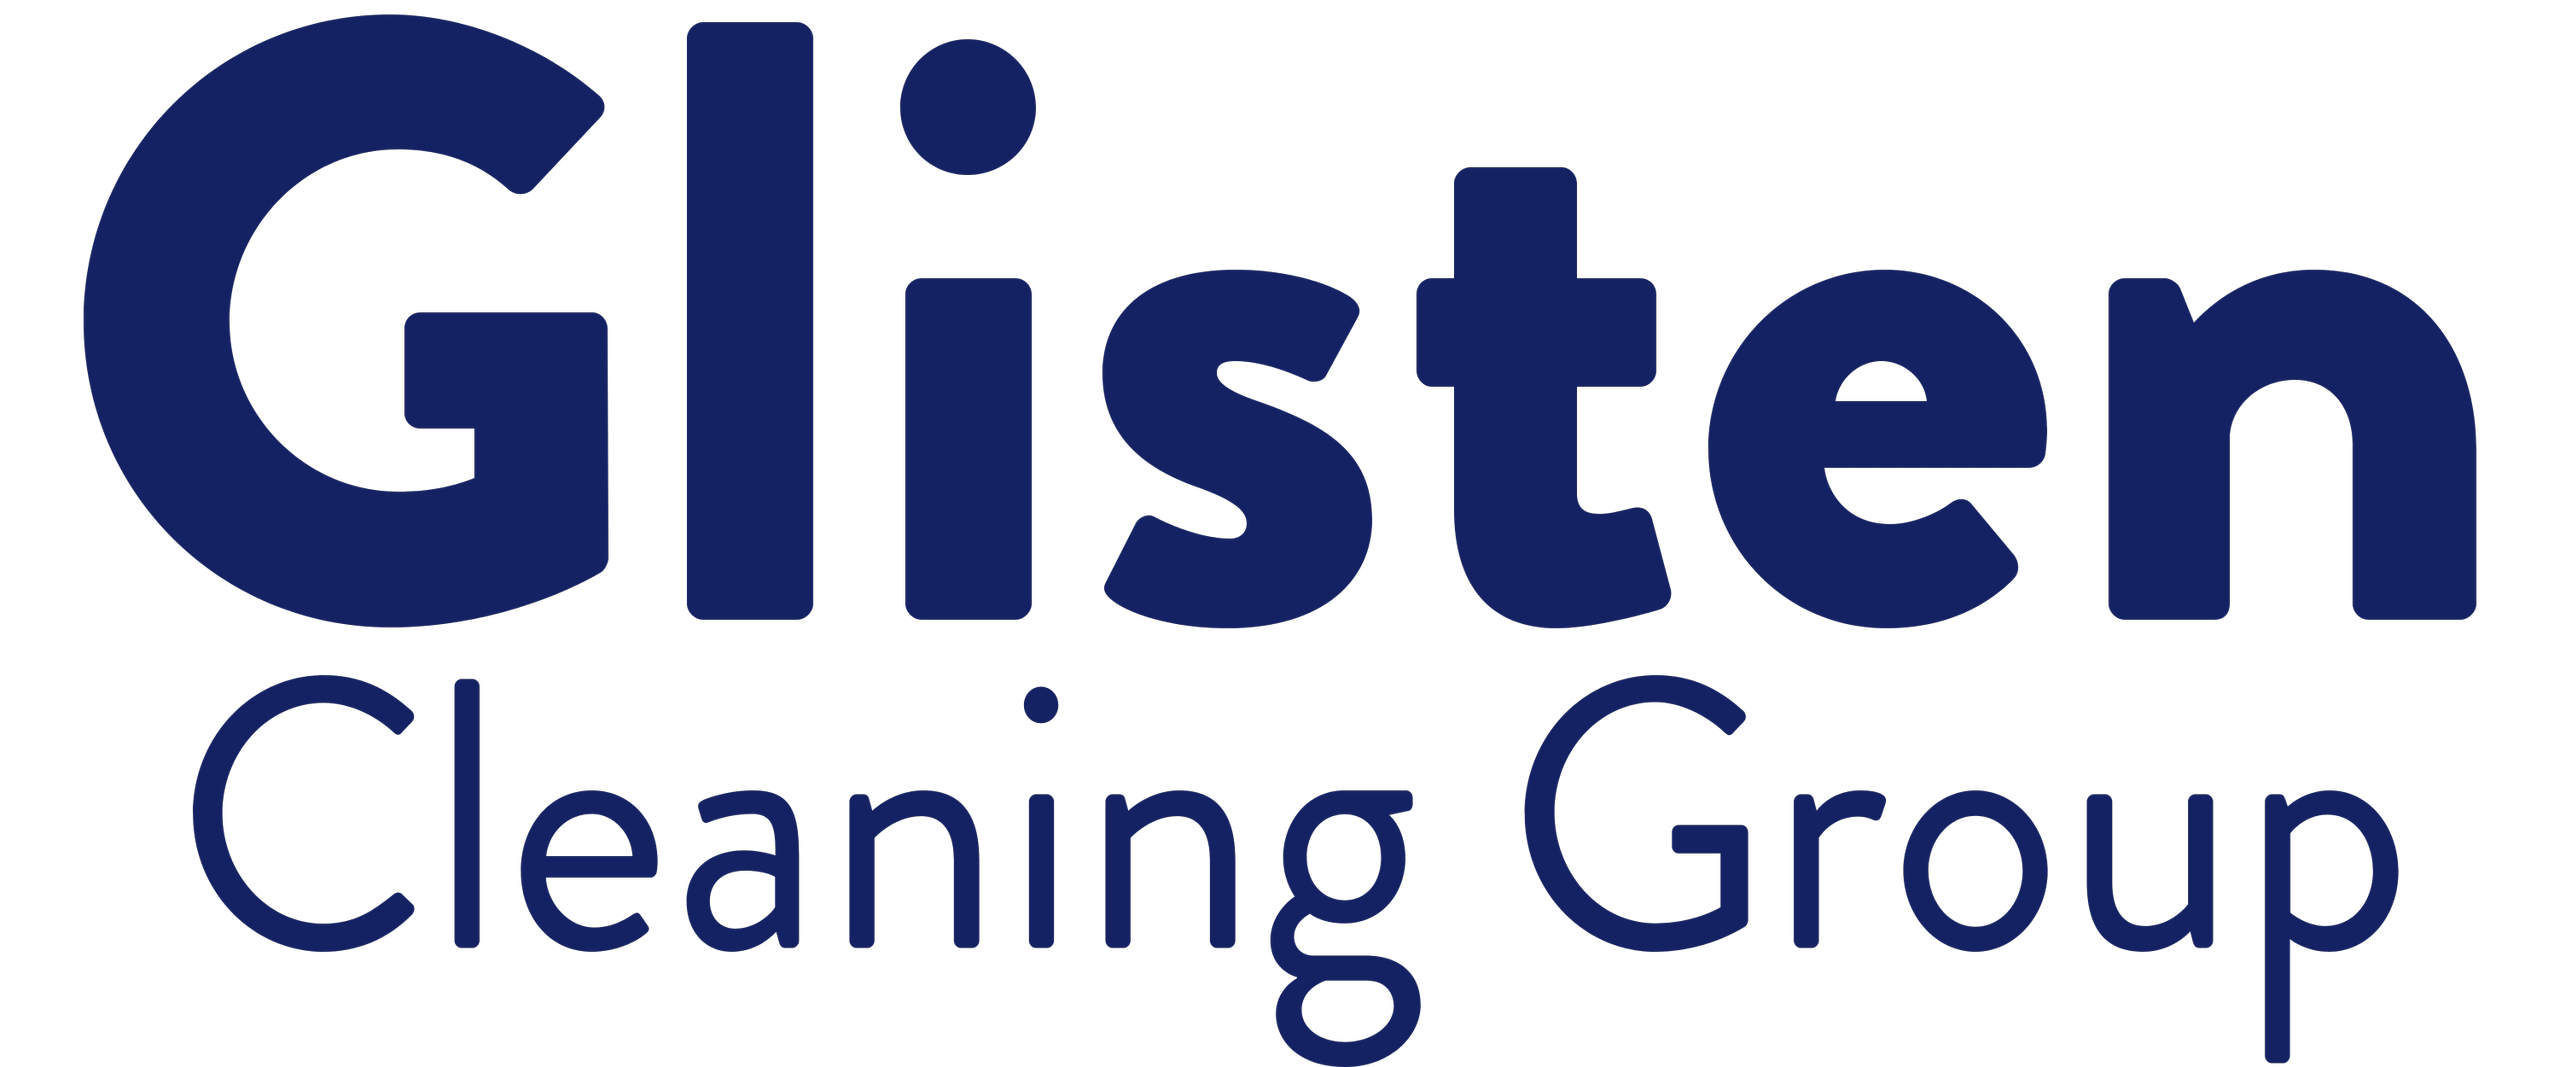 Glisten Cleaning Group Ltd